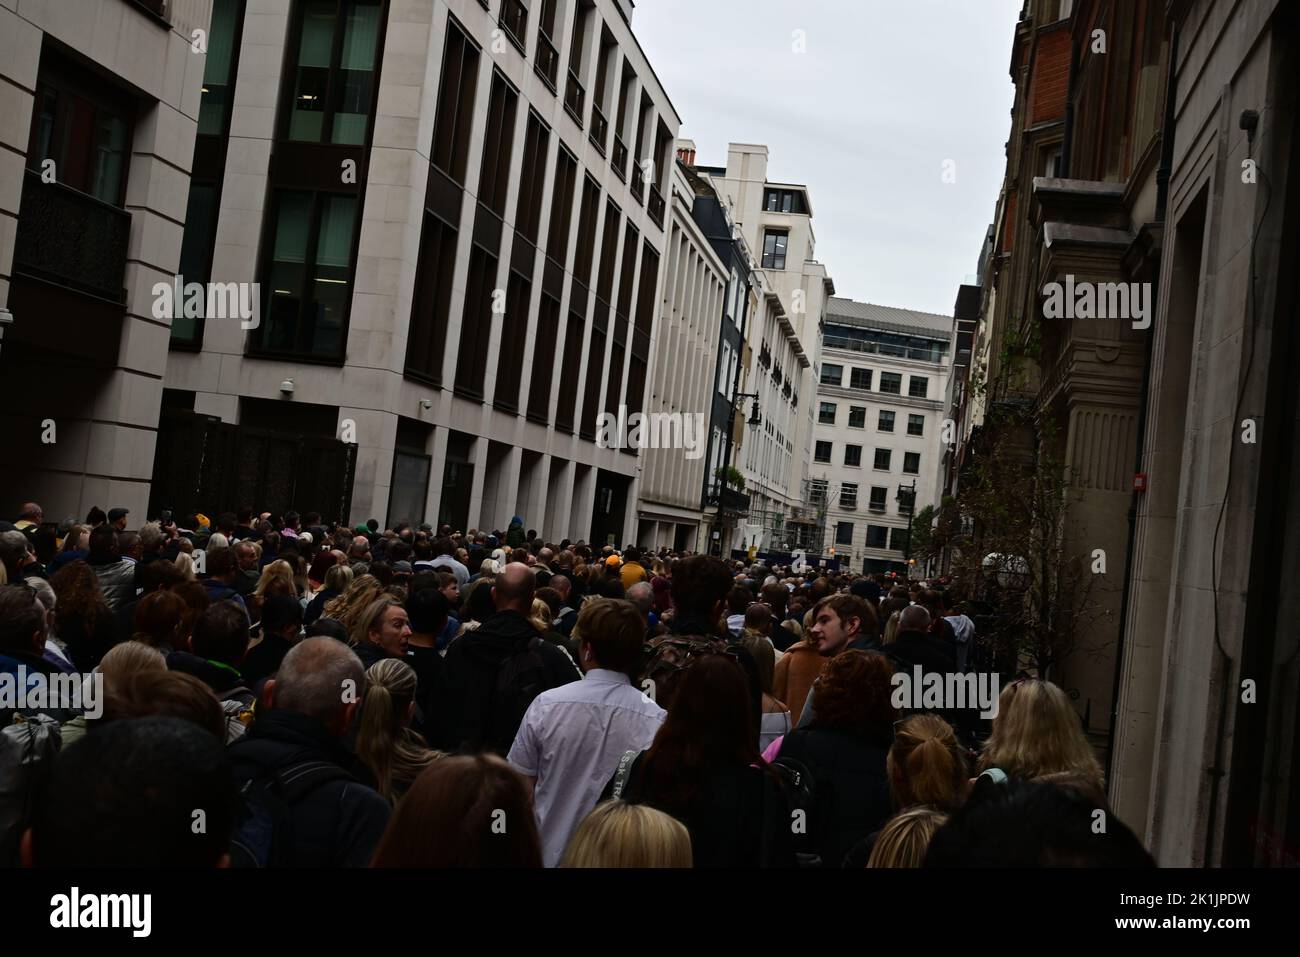 Funeral de Su Majestad la Reina Isabel II, Londres, Reino Unido, lunes 19th de septiembre de 2022. Congestión de la multitud en Bolton Street. Foto de stock